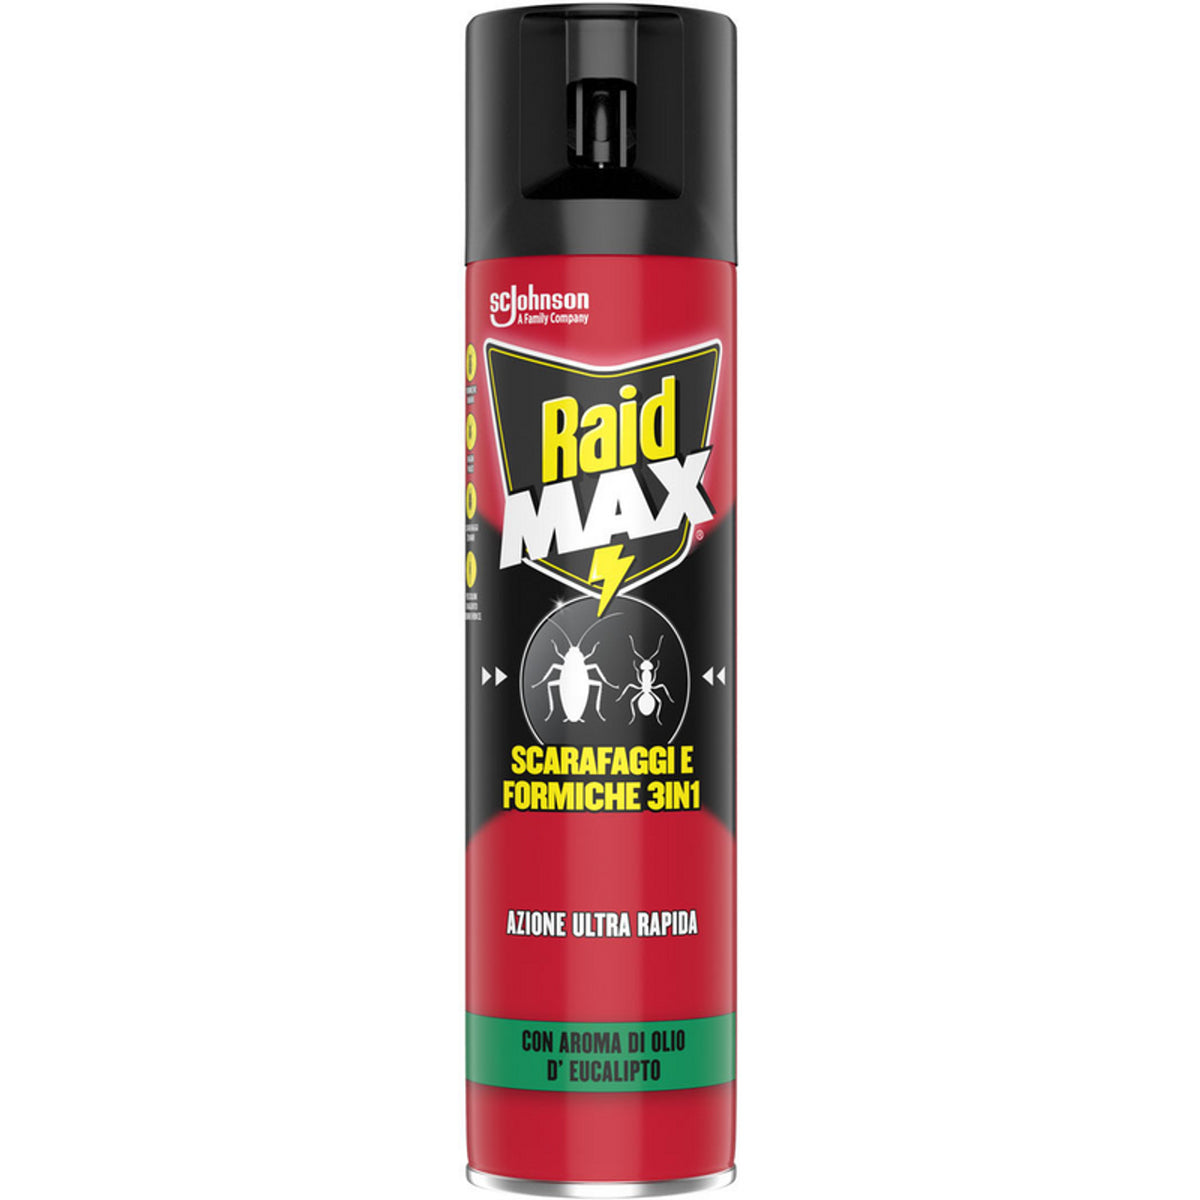 Raid max insecticide pulvérisation cafards et fourmis 3in1 Ultra Rapid Action avec arôme d'huile d'eucalyptus 400 ml